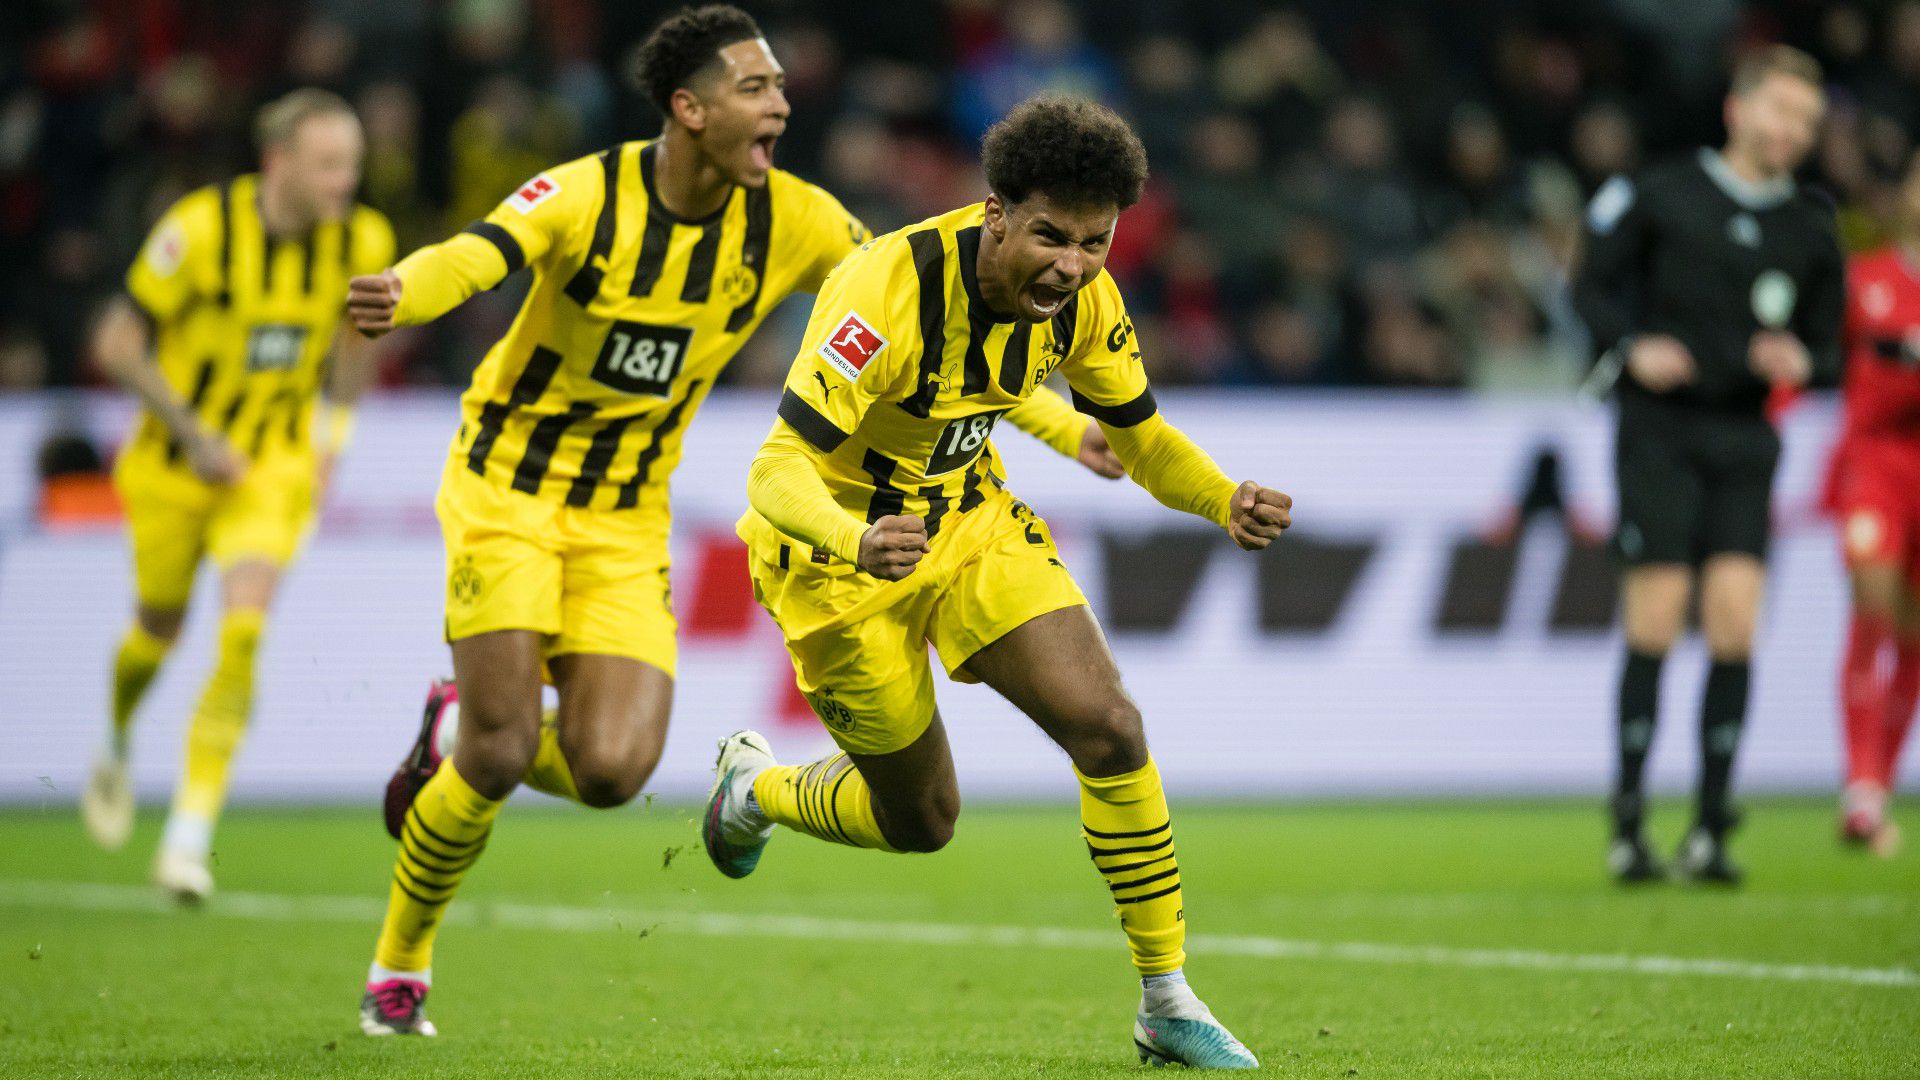 Rangadót nyert a Dortmund, elképesztően szoros az élmezőny a Bundesligában